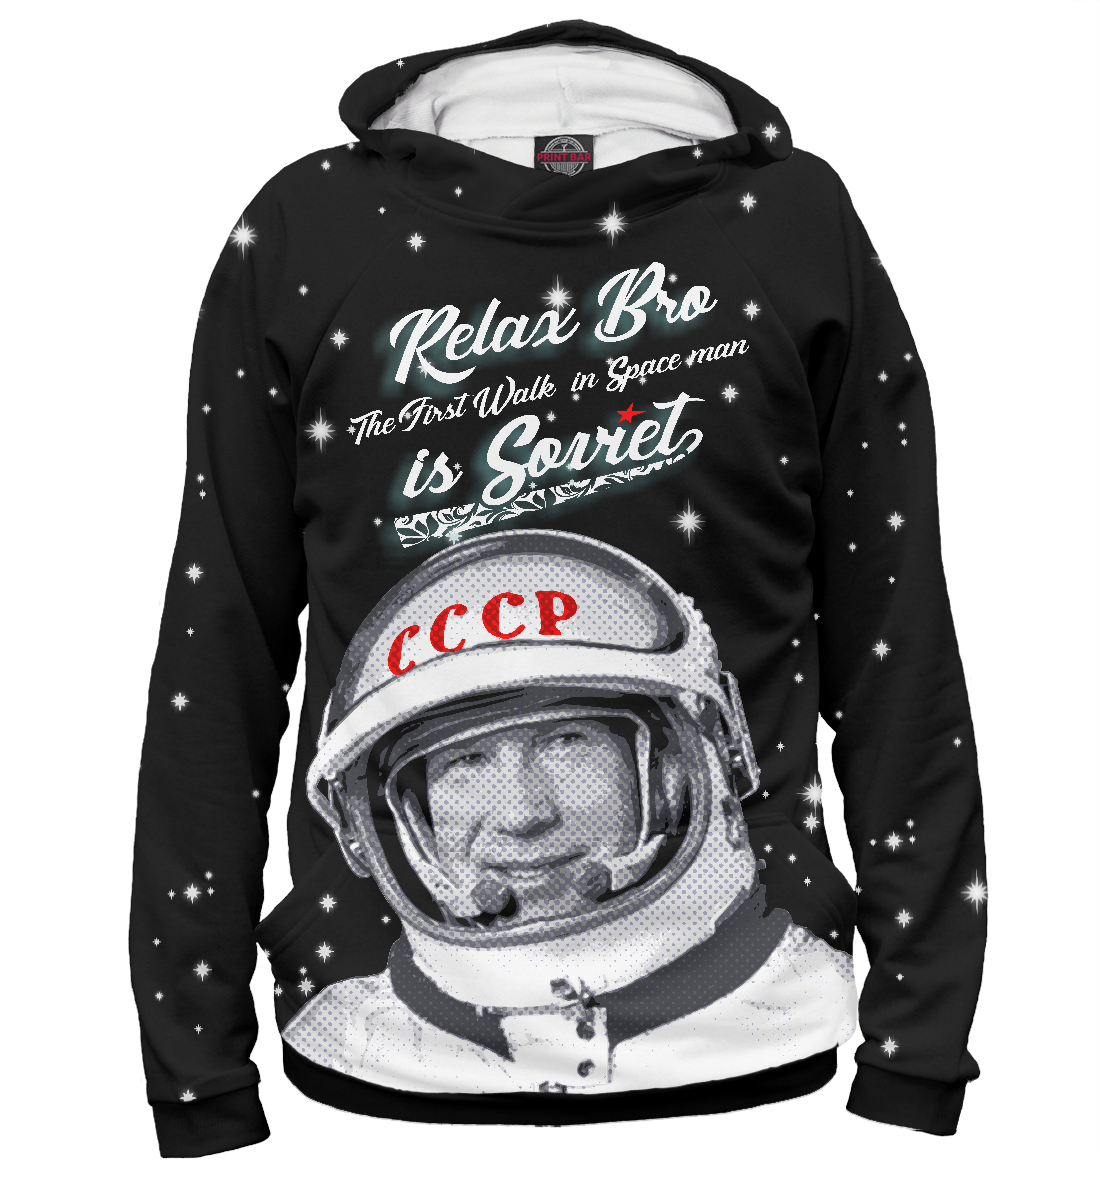 Расслабьтесь, первый человек в открытом космосе - Советский !!!